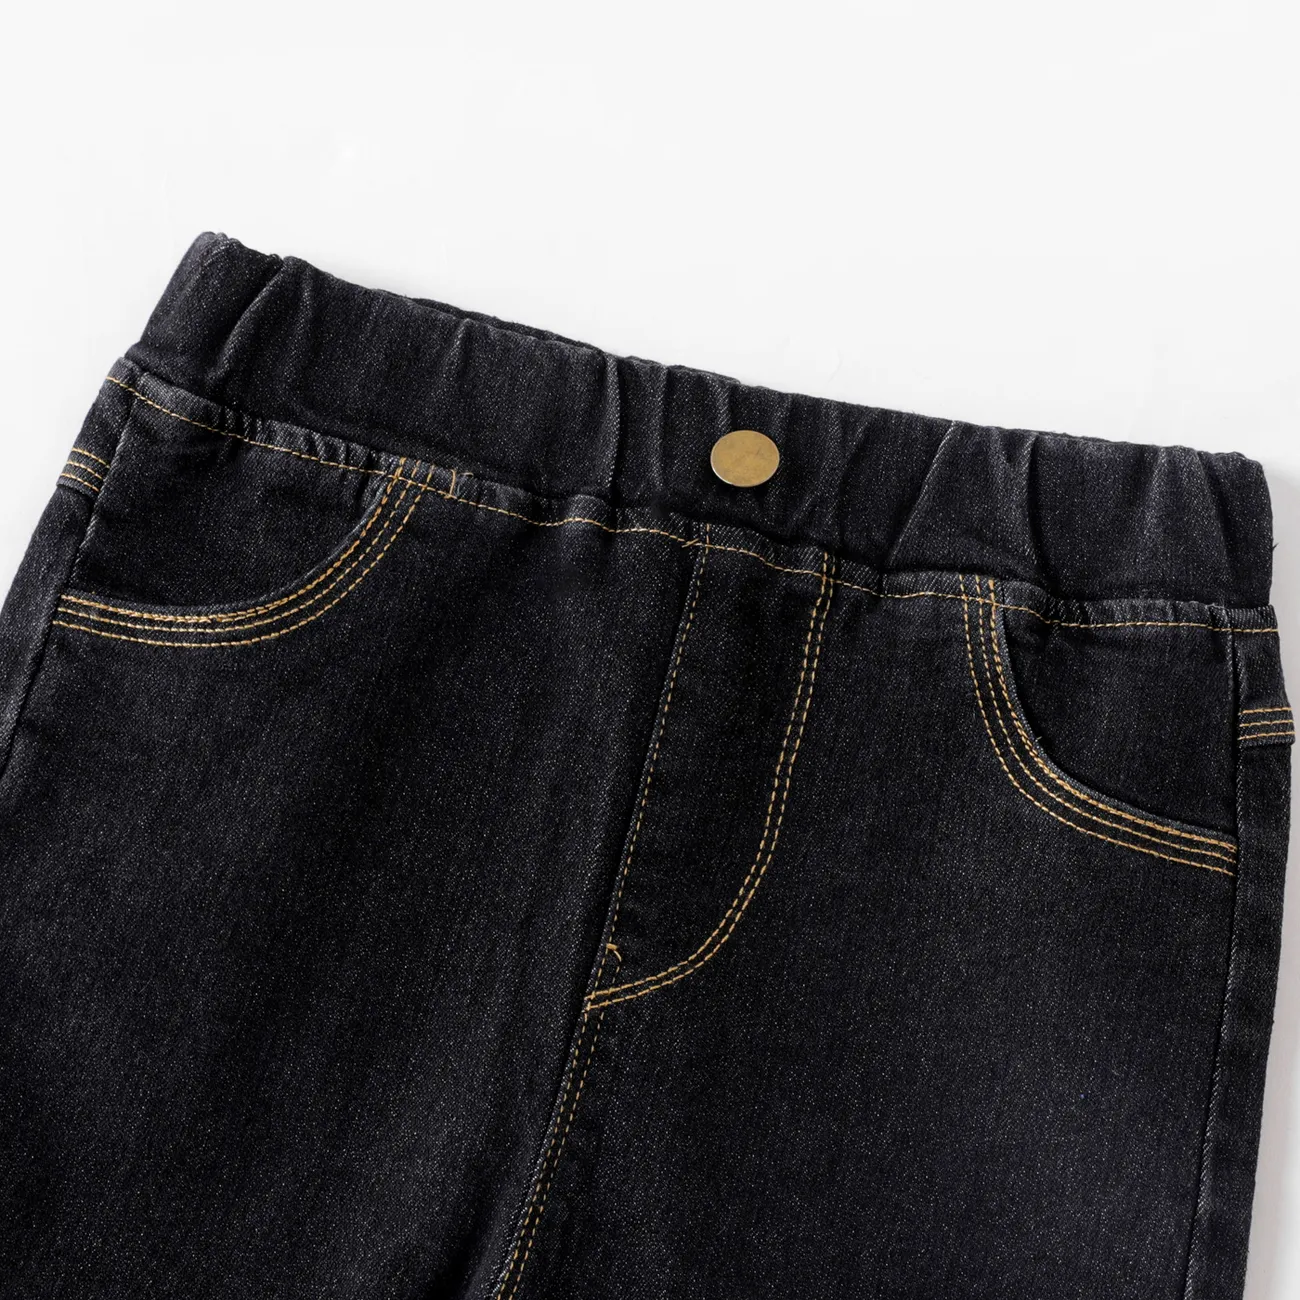 Kinder Mädchen Unifarben Aufgesetzte Tasche Jeans schwarz big image 1